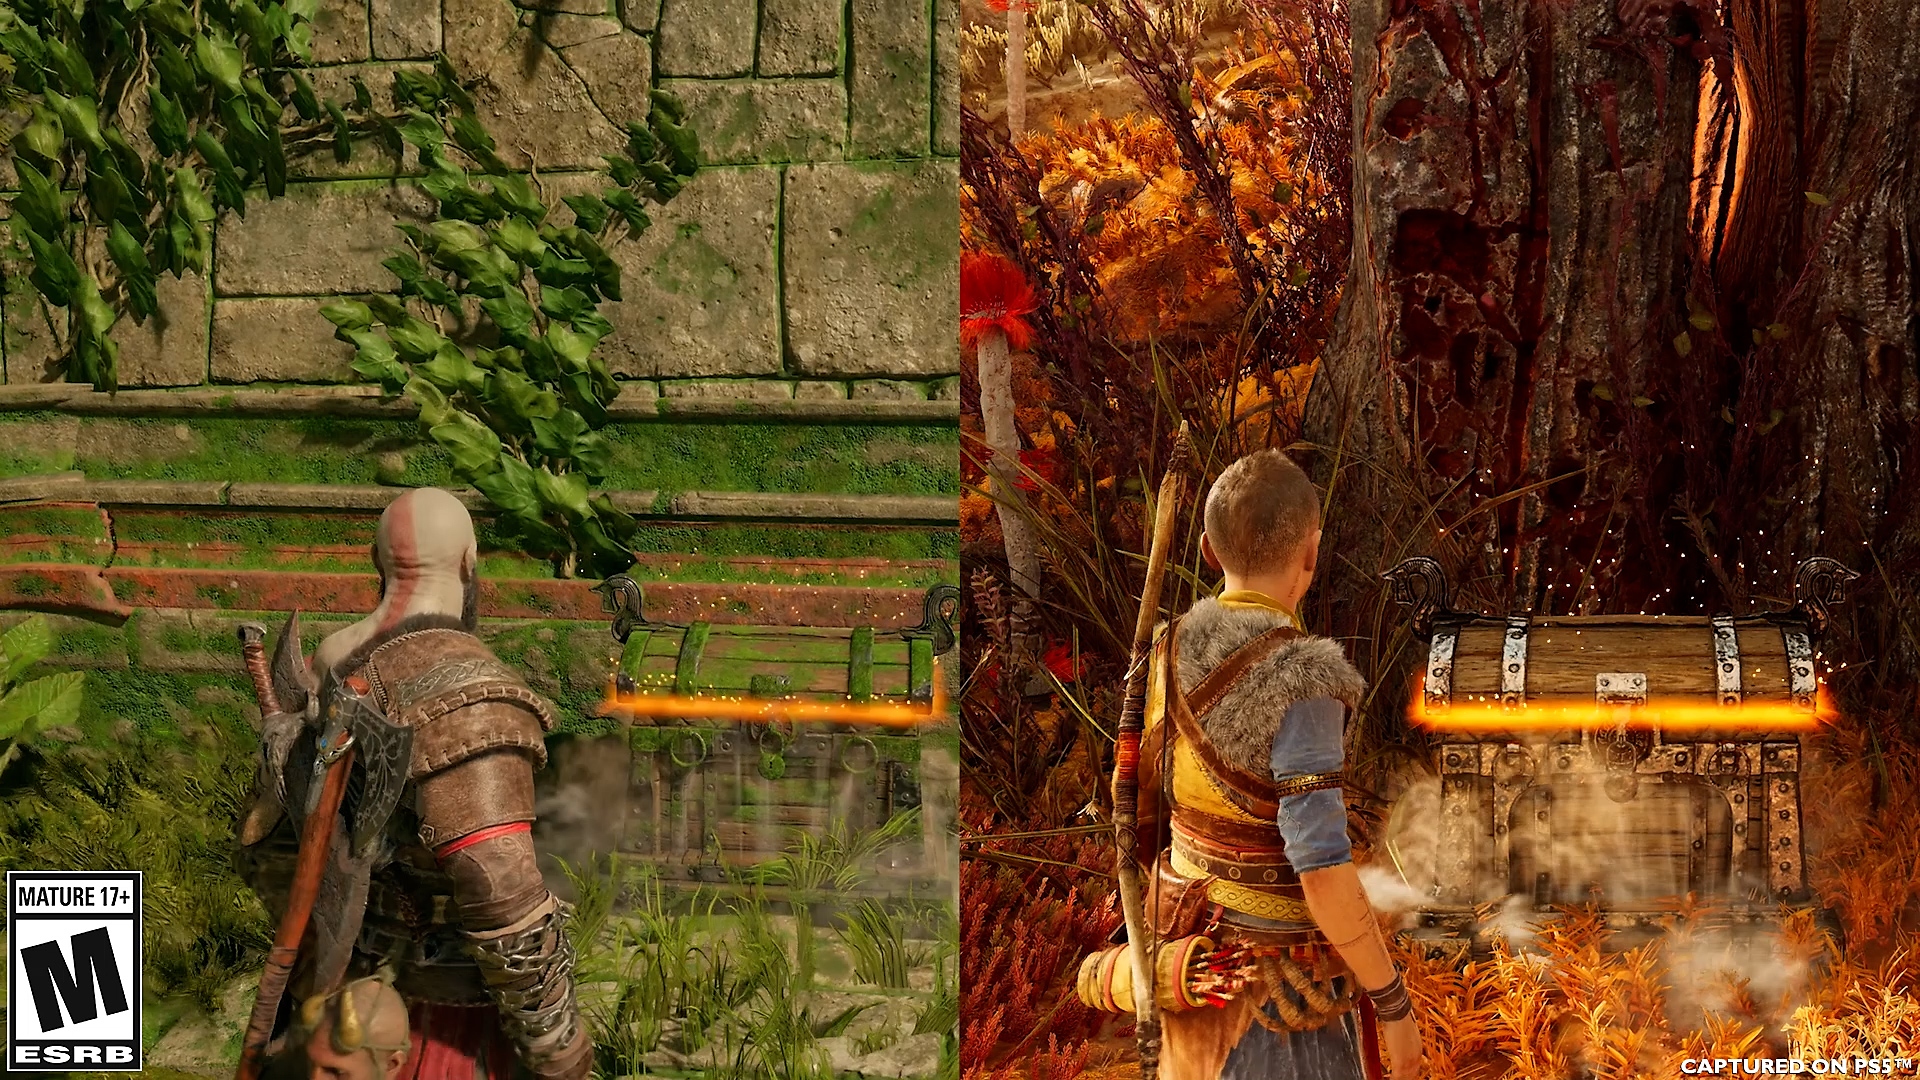 Animation de comparaison de l'ouverture d'un coffre par Atreus et par Kratos dans God of War Ragnarök.